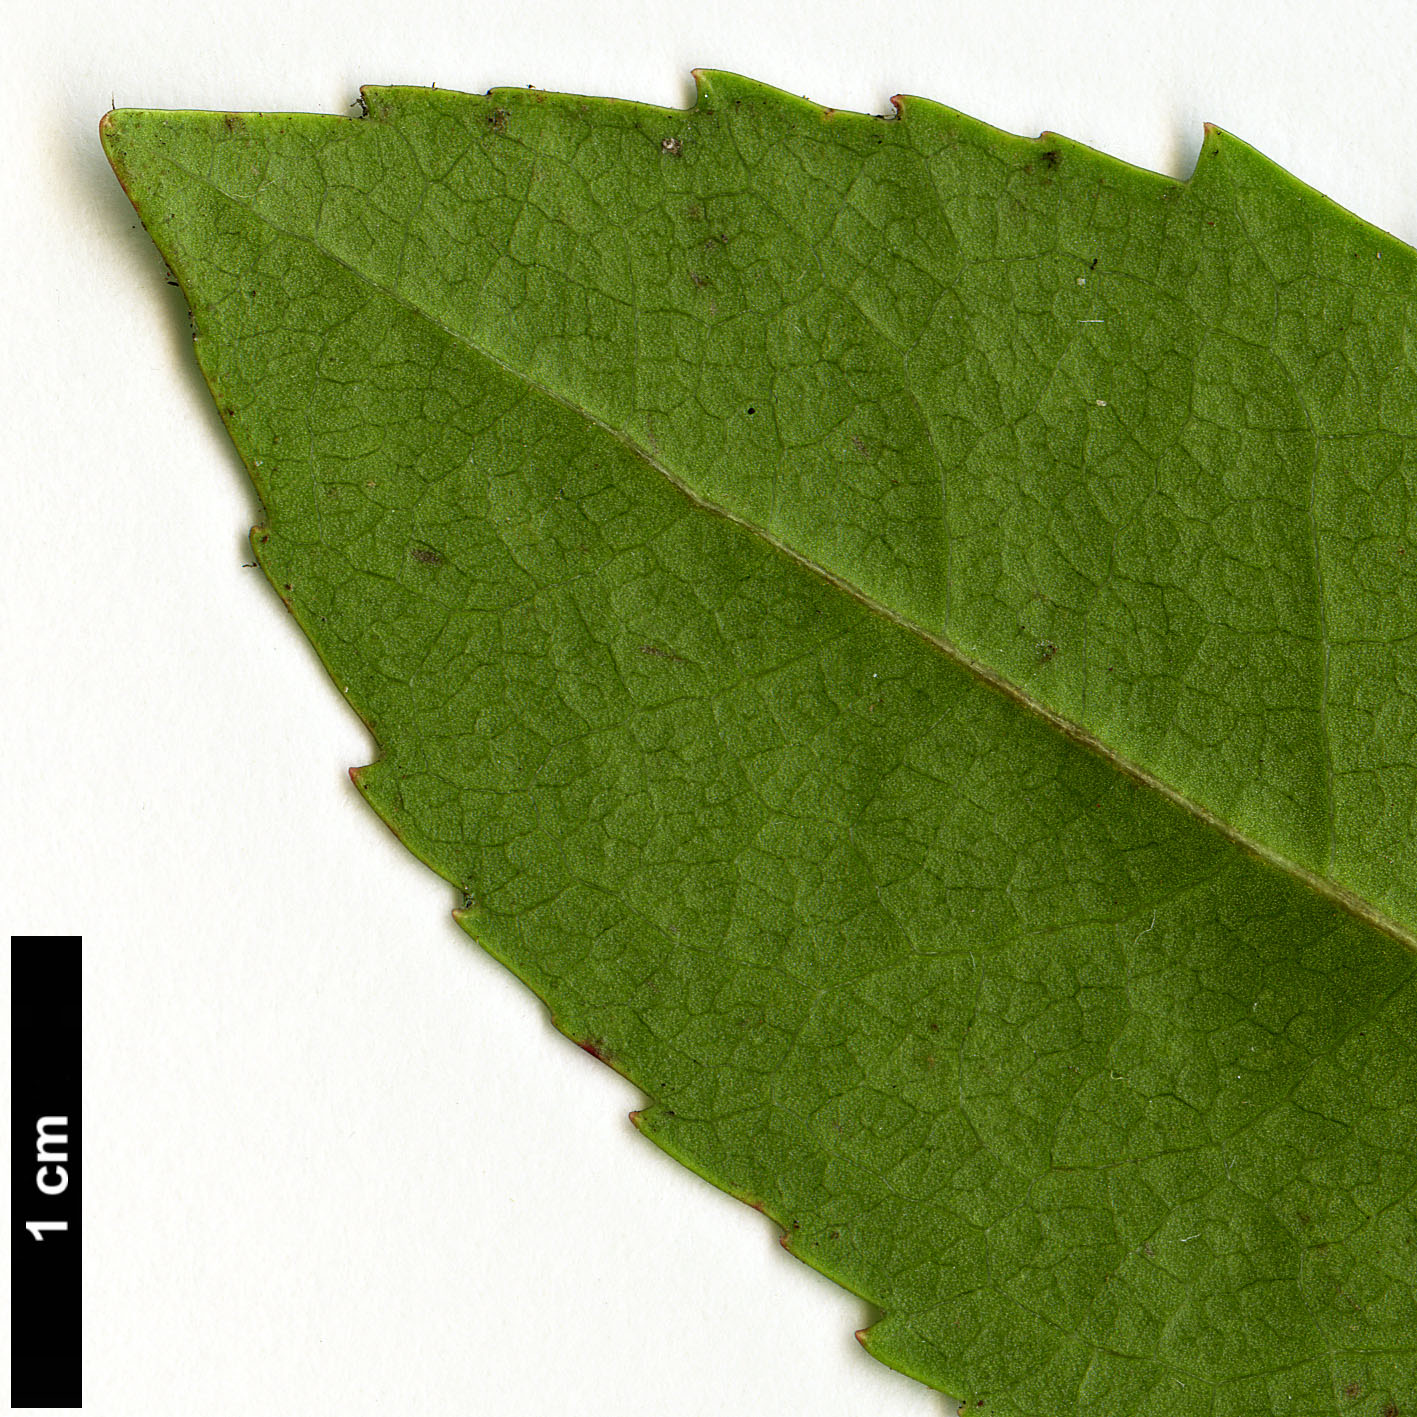 High resolution image: Family: Ericaceae - Genus: Arbutus - Taxon: unedo